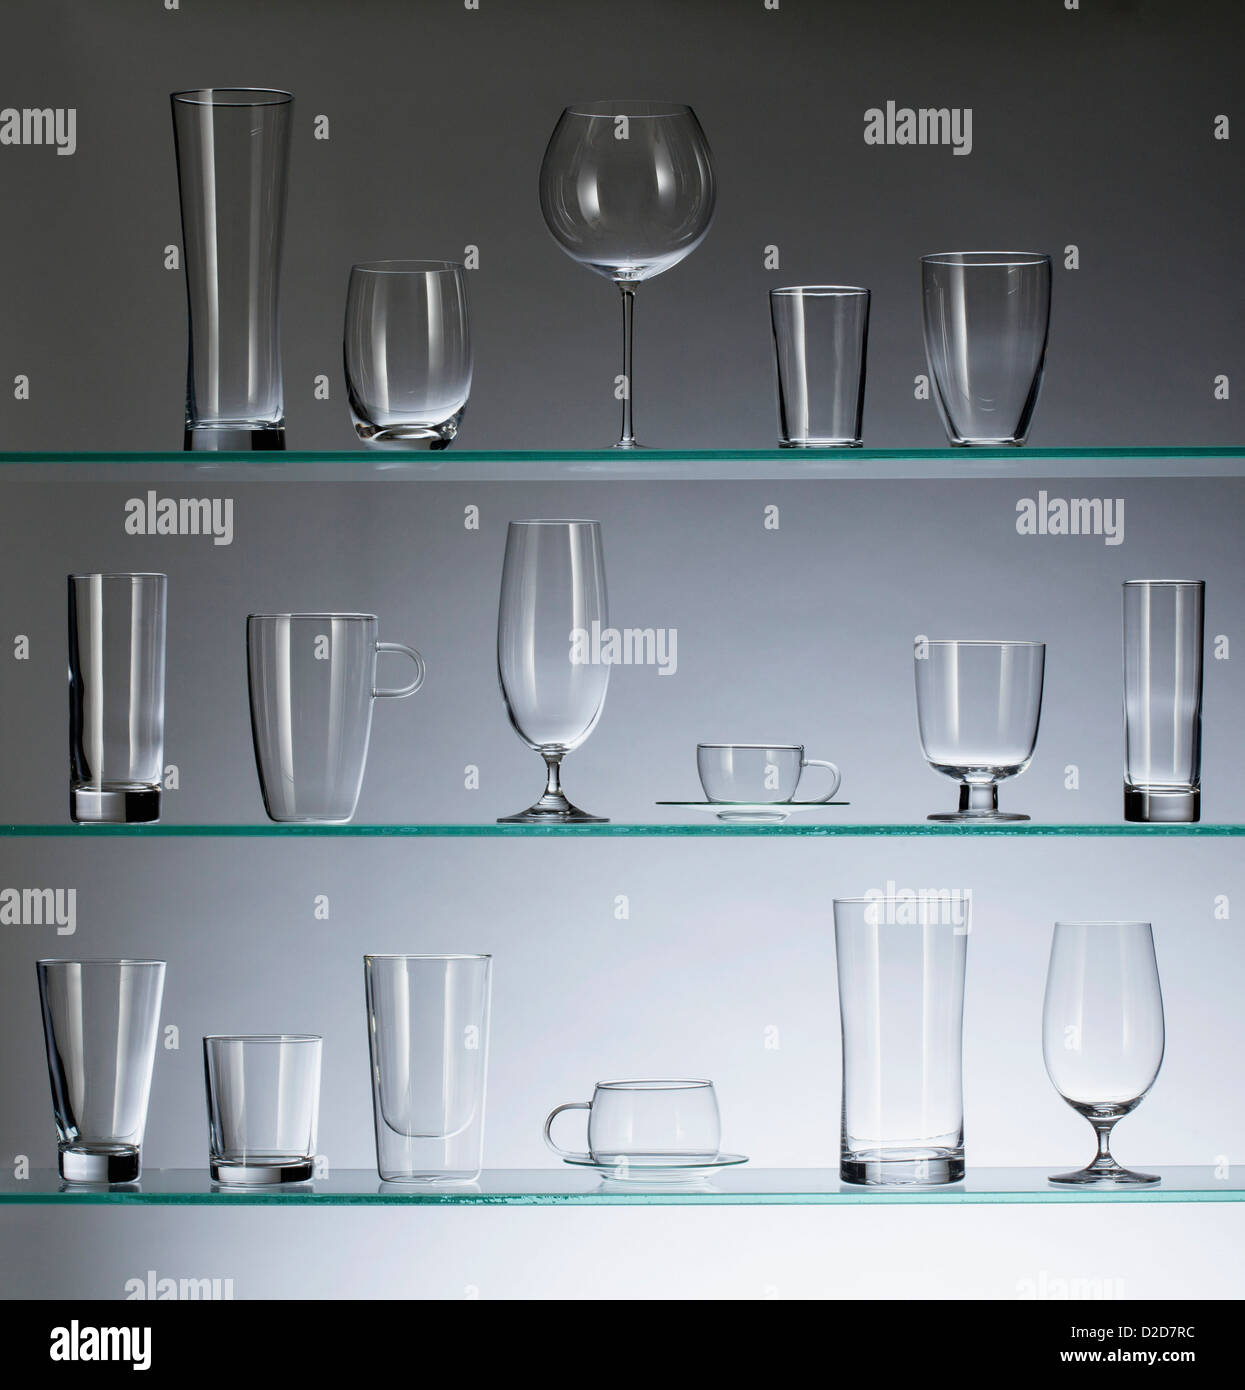 Types Of Liquor Glasses